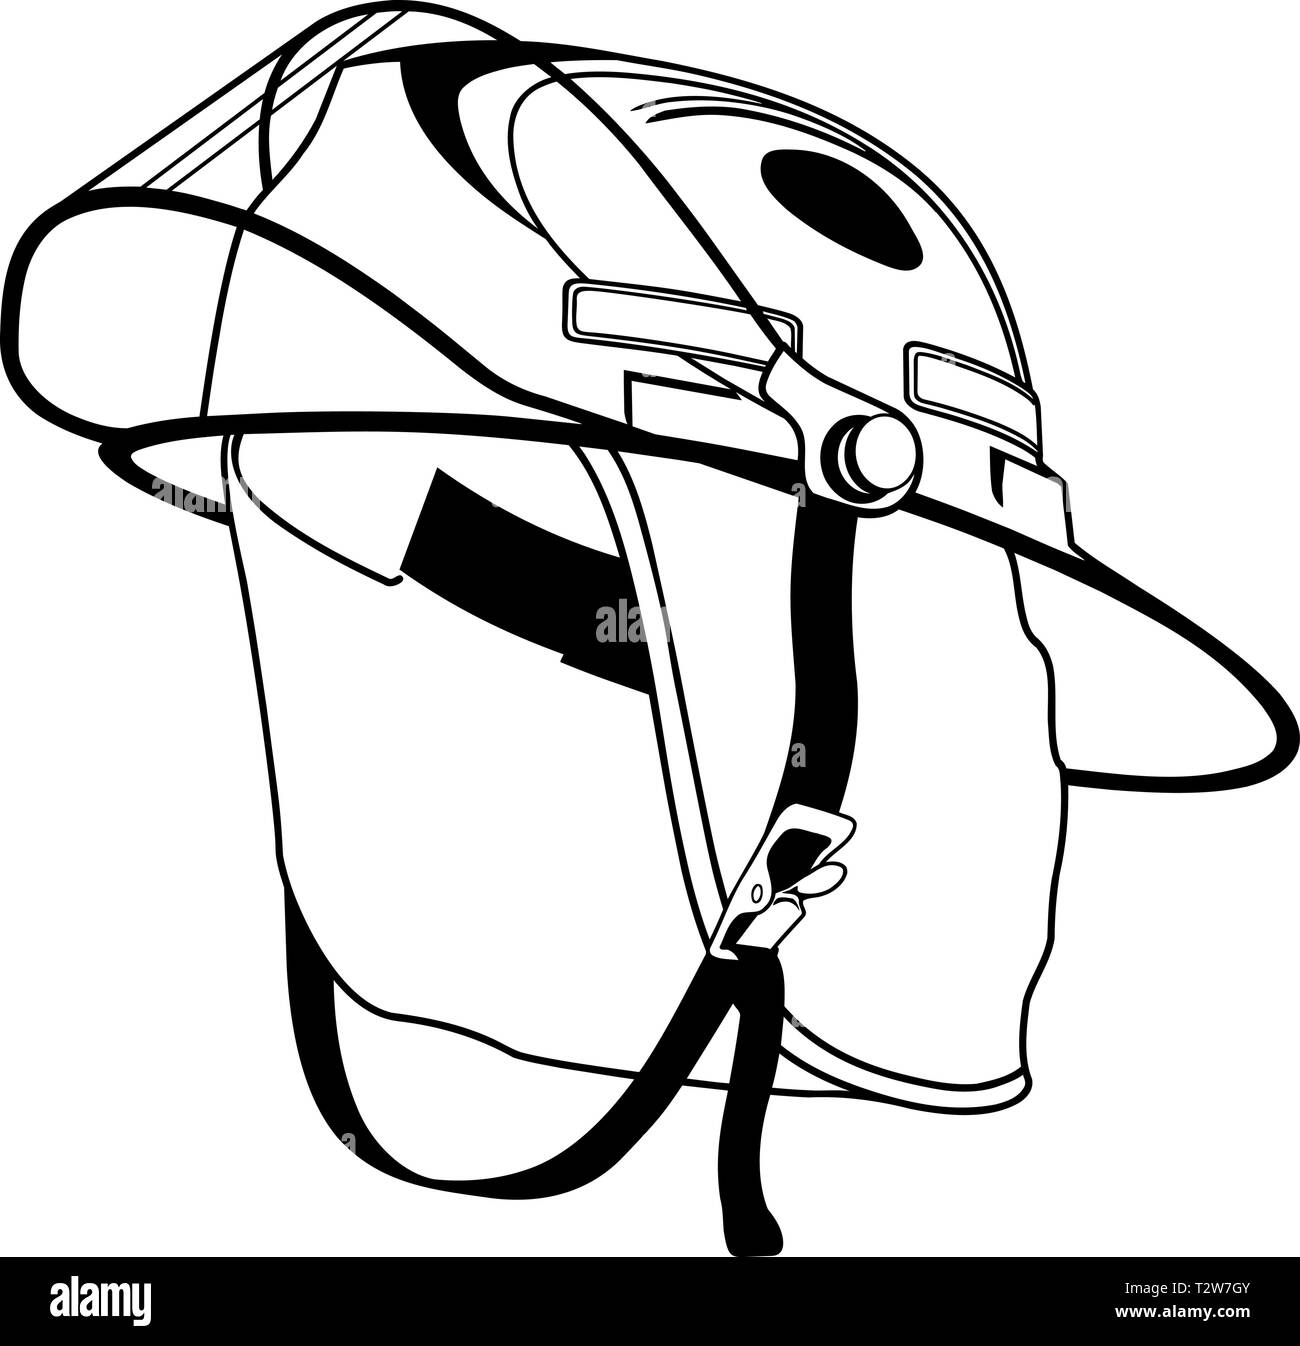 Fireman's Helmet Vector Illustration Stock Vector